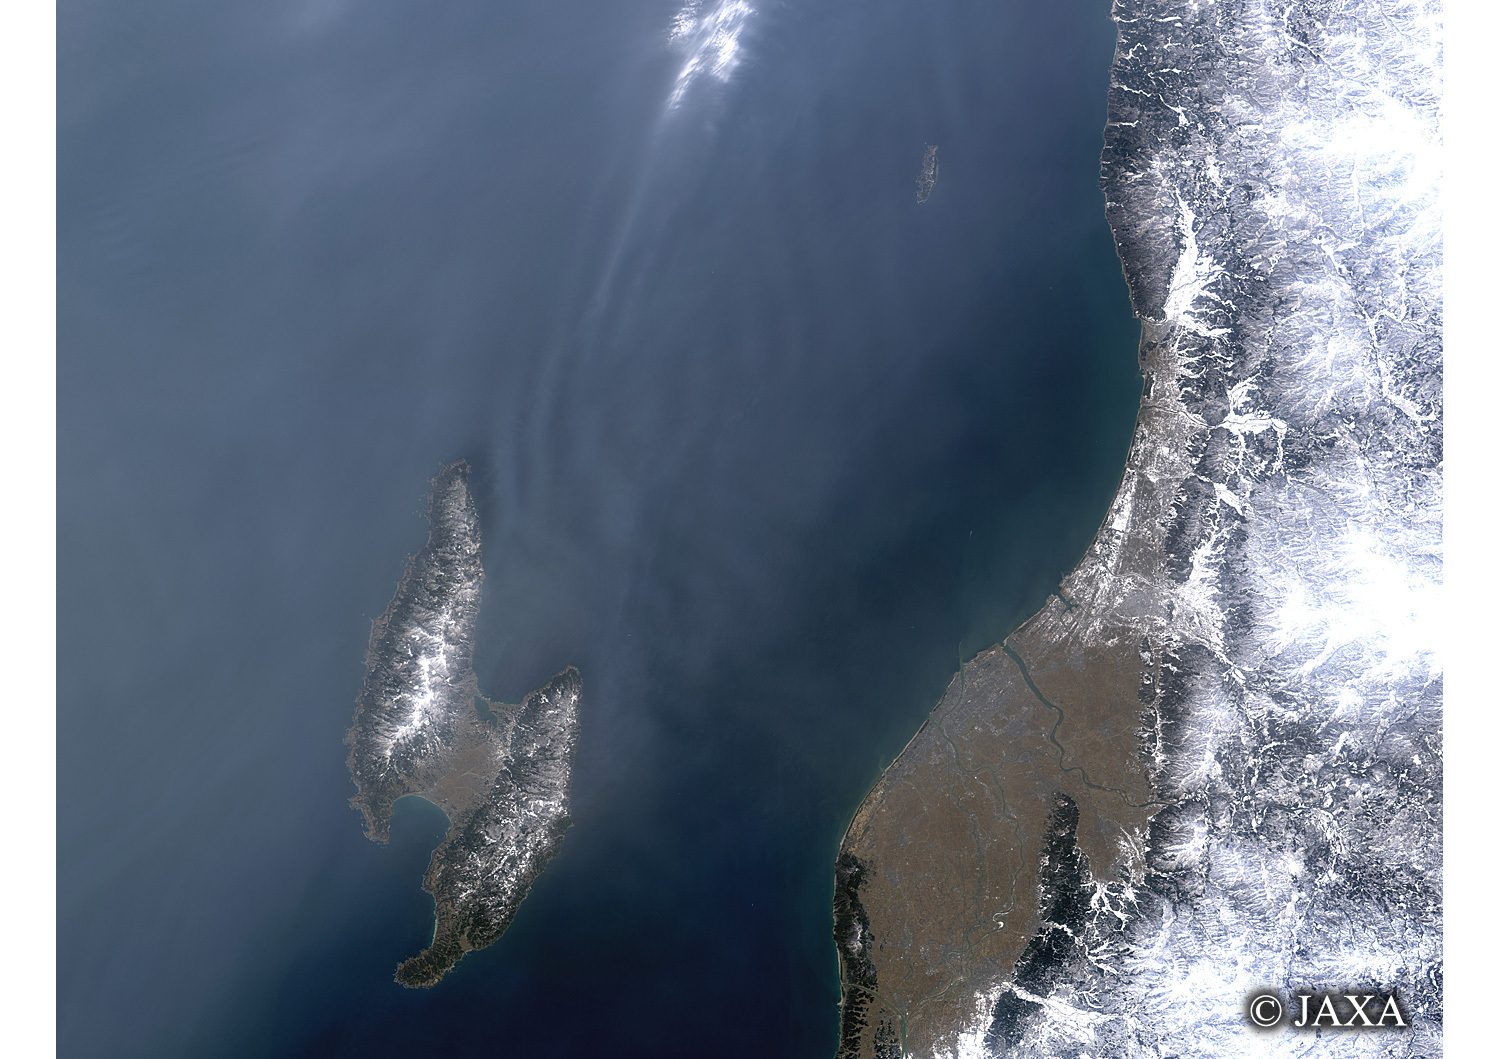 だいちから見た日本の都市 佐渡島:衛星画像